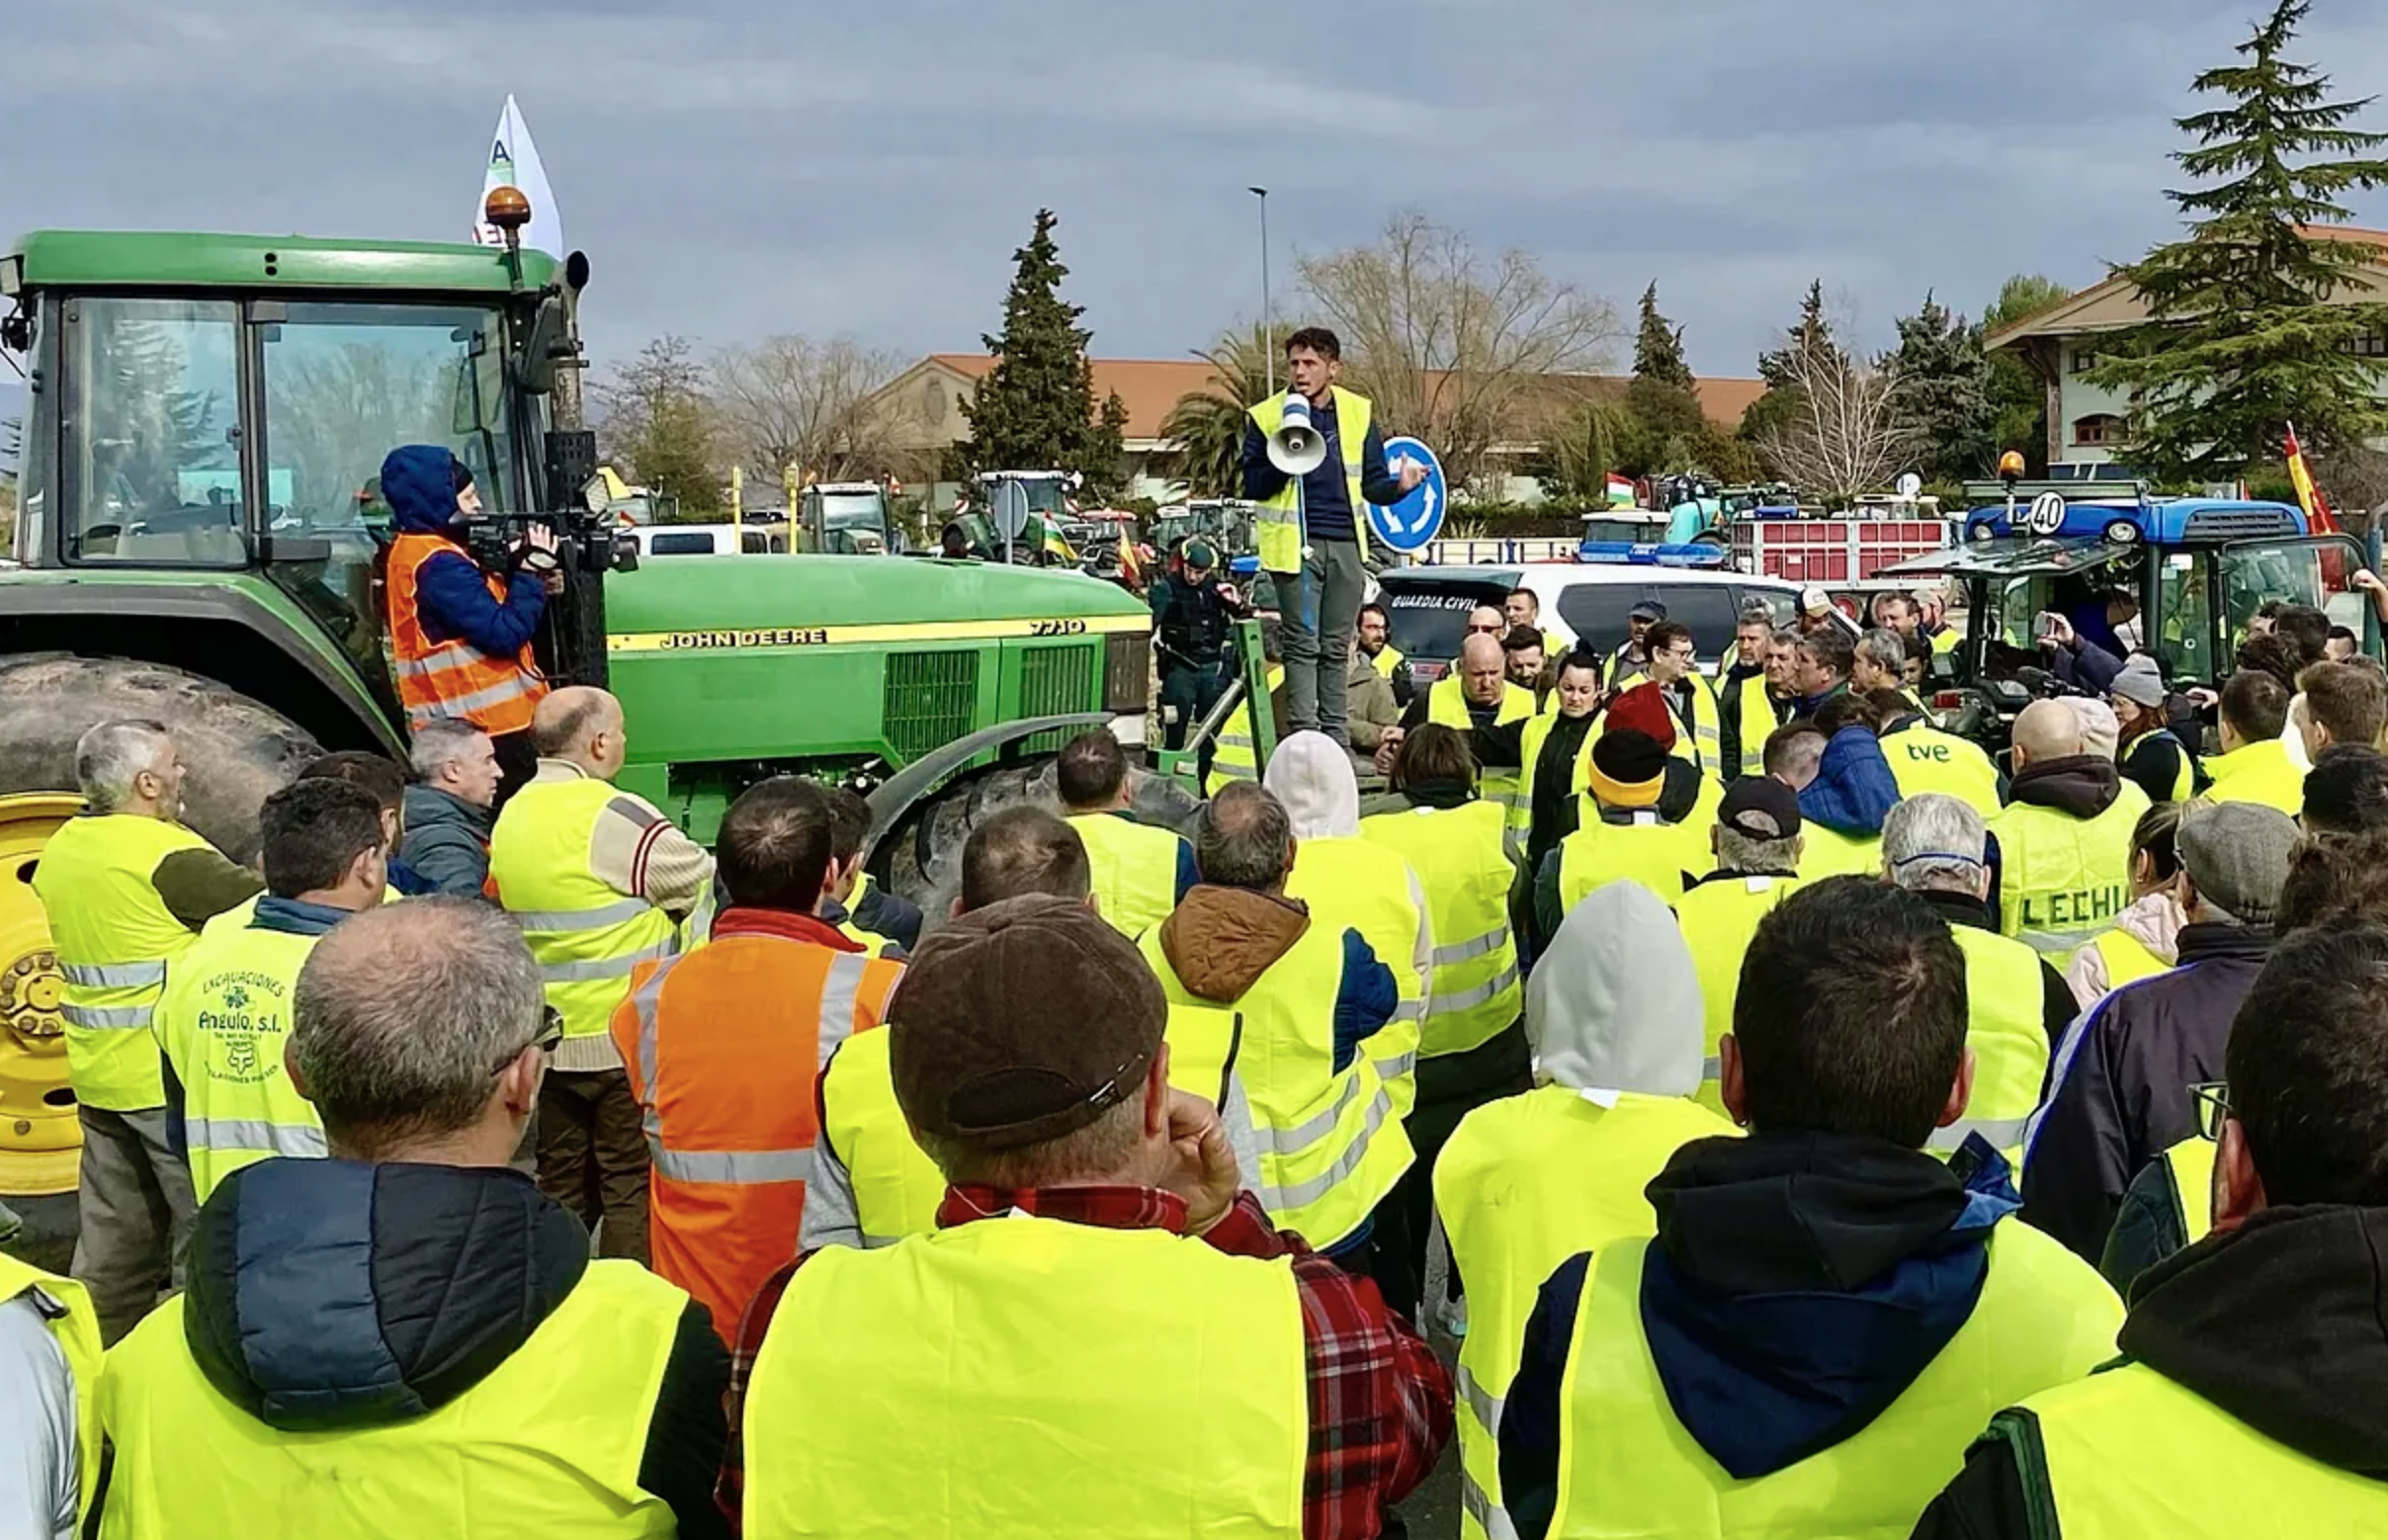 Huelga de agricultores en España suma unos 30 heridos tras fuertes enfrentamientos con la policía